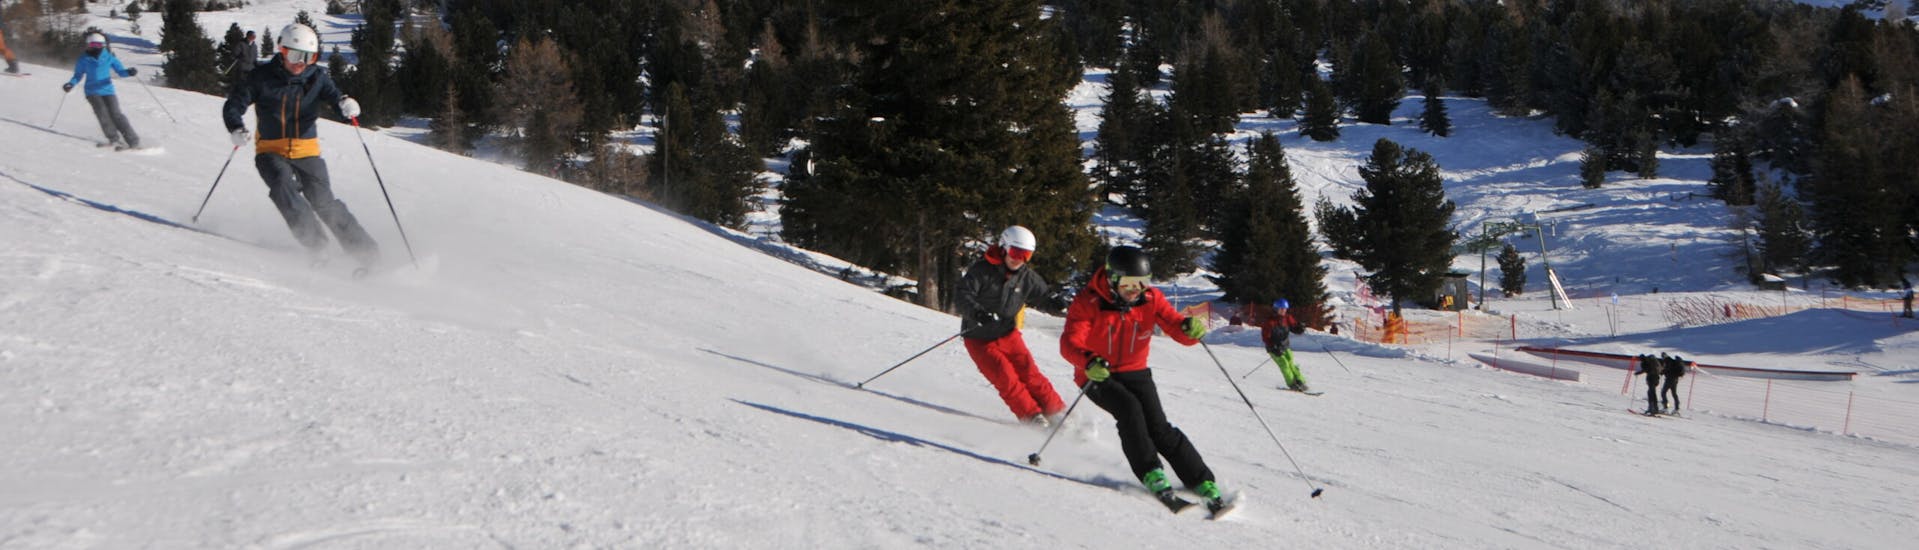 Clases particulares de esquí para adultos con experiencia con Ski- & Snowboardschule Innsbruck.